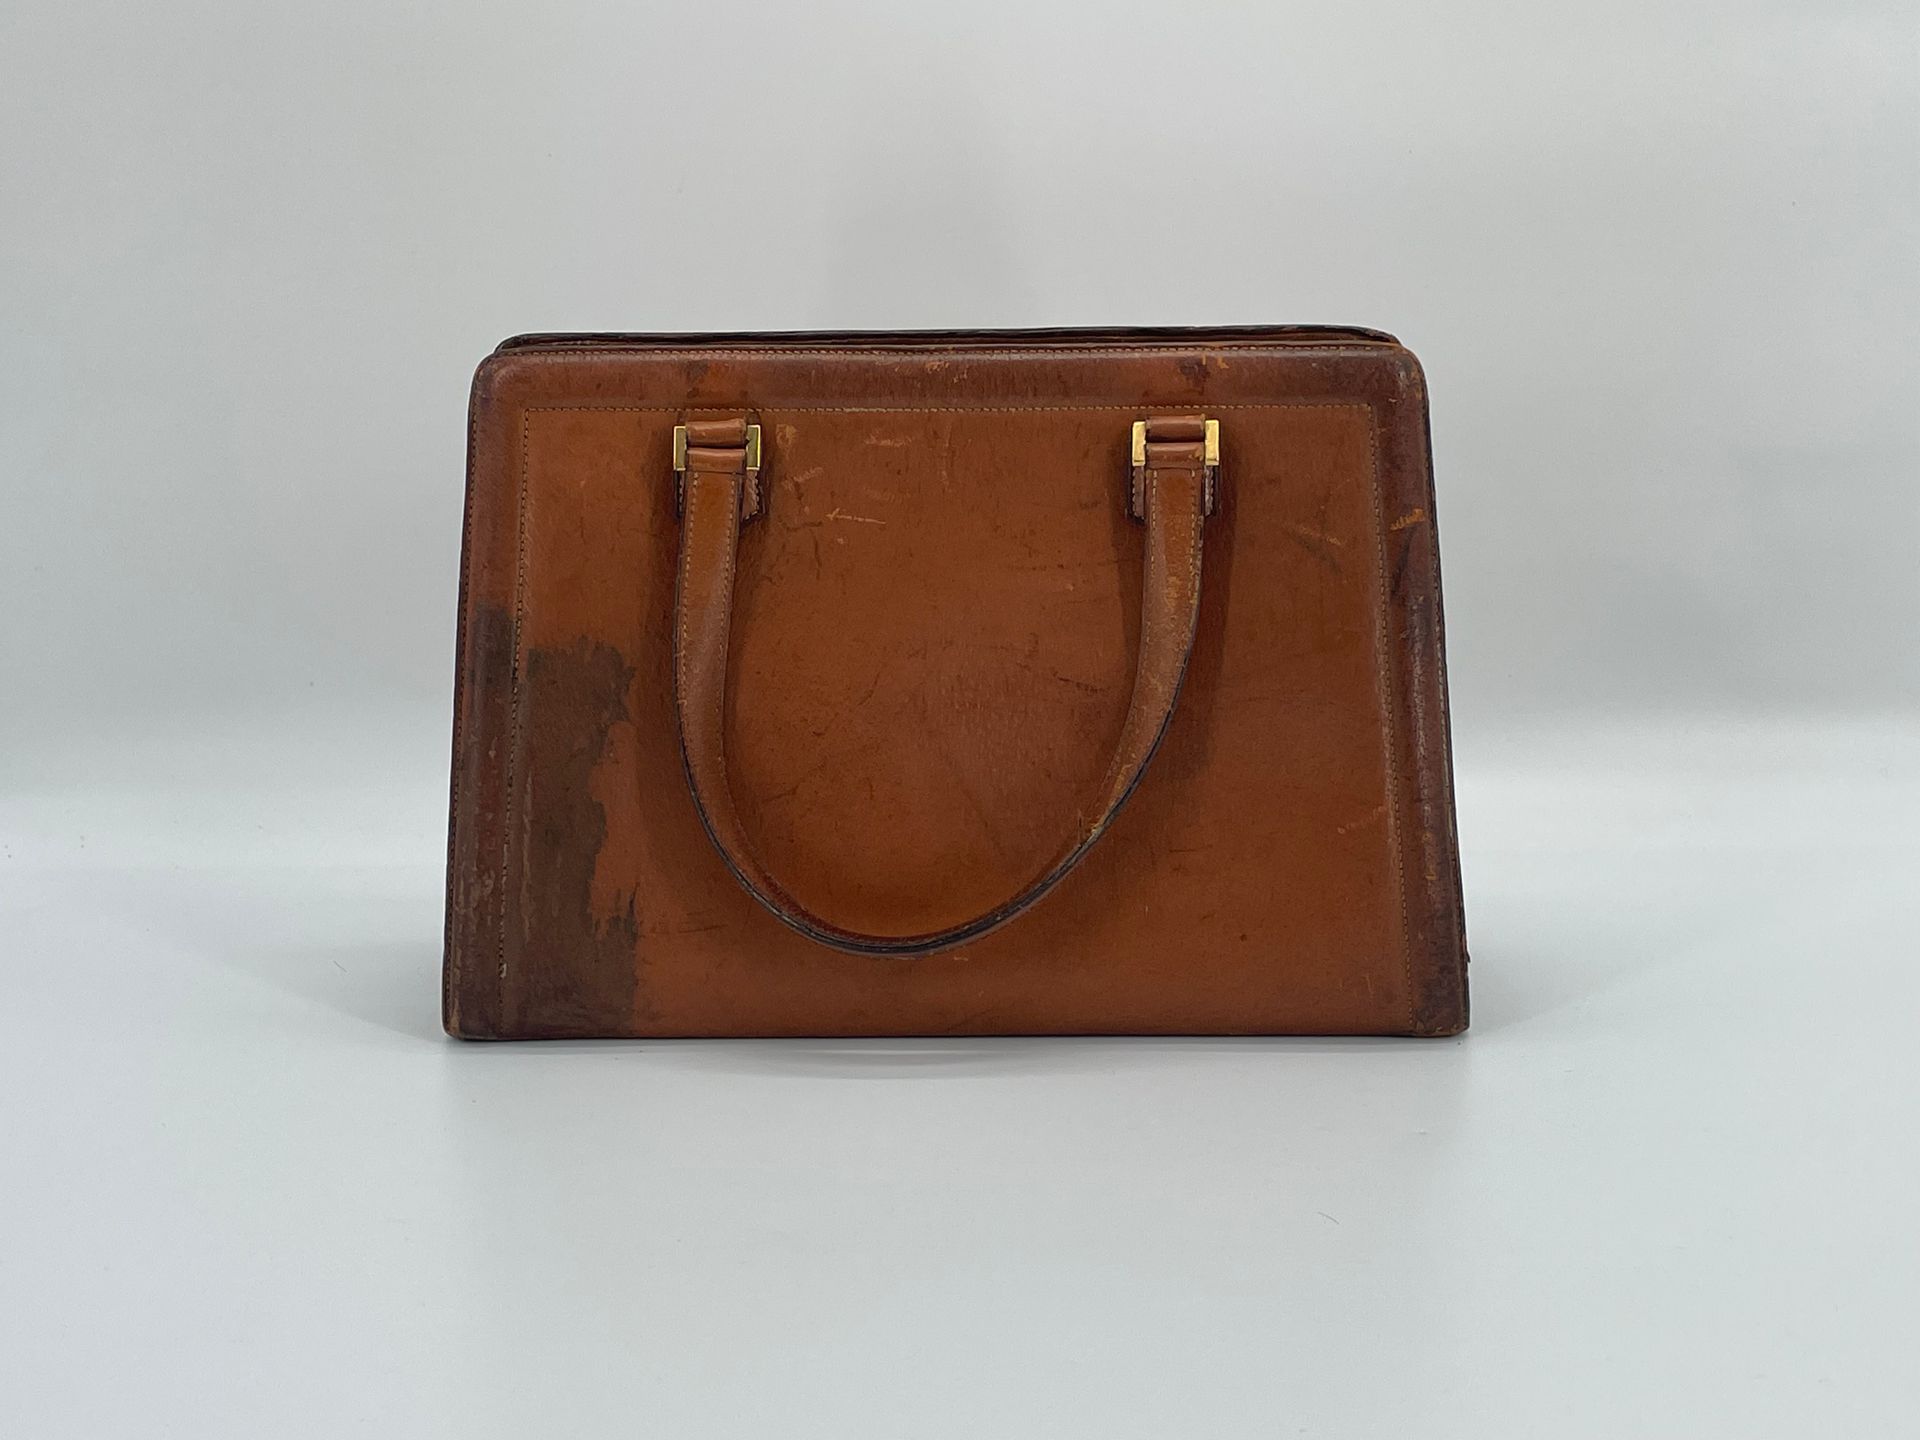 Null 巴黎赫曼斯。
哈瓦那绗缝皮革梯形手提包，有三个隔层。
约 1950-60 年。
22.5 x 32 x 9 厘米。
磨损、染色、缺失。无钥匙。